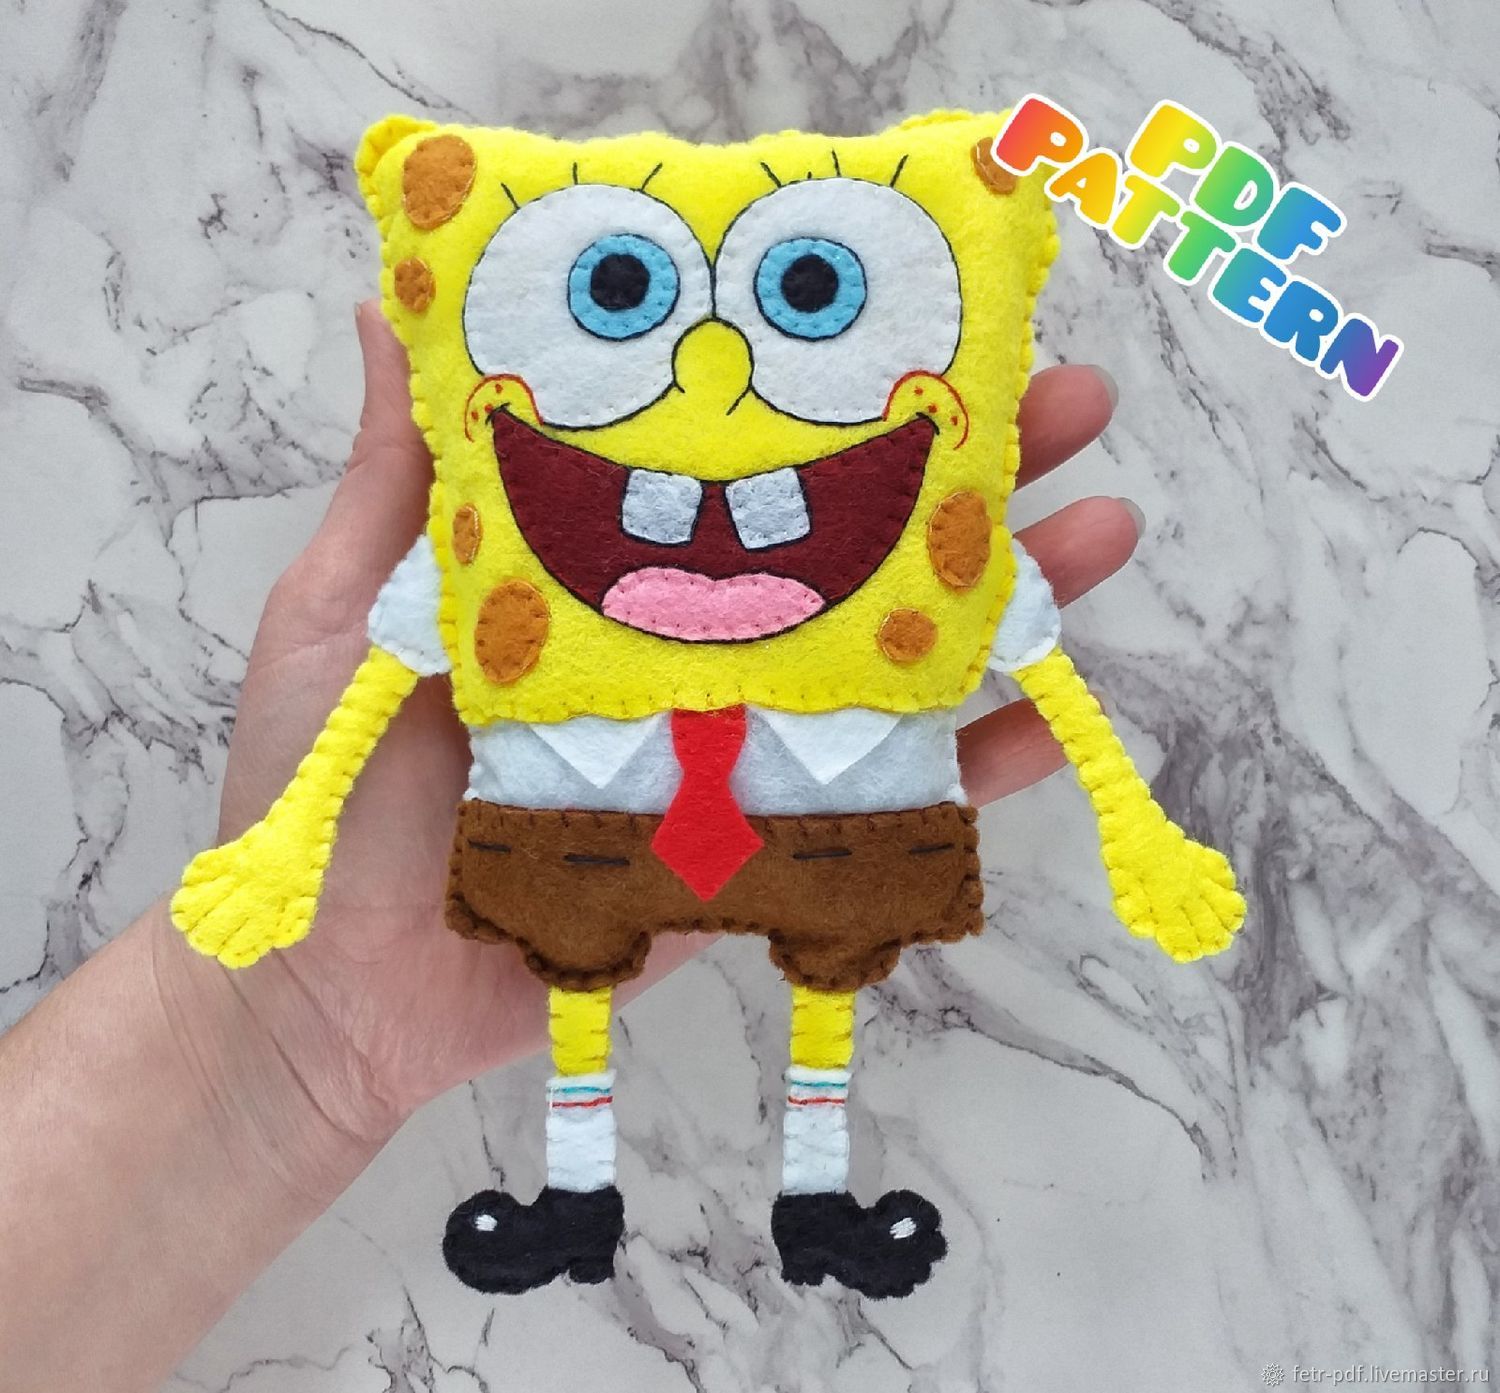 ГУБКА БОБ Злая форма или Spongebob.exe ➤ Как сделать маску Спанч Боба из картона своими руками